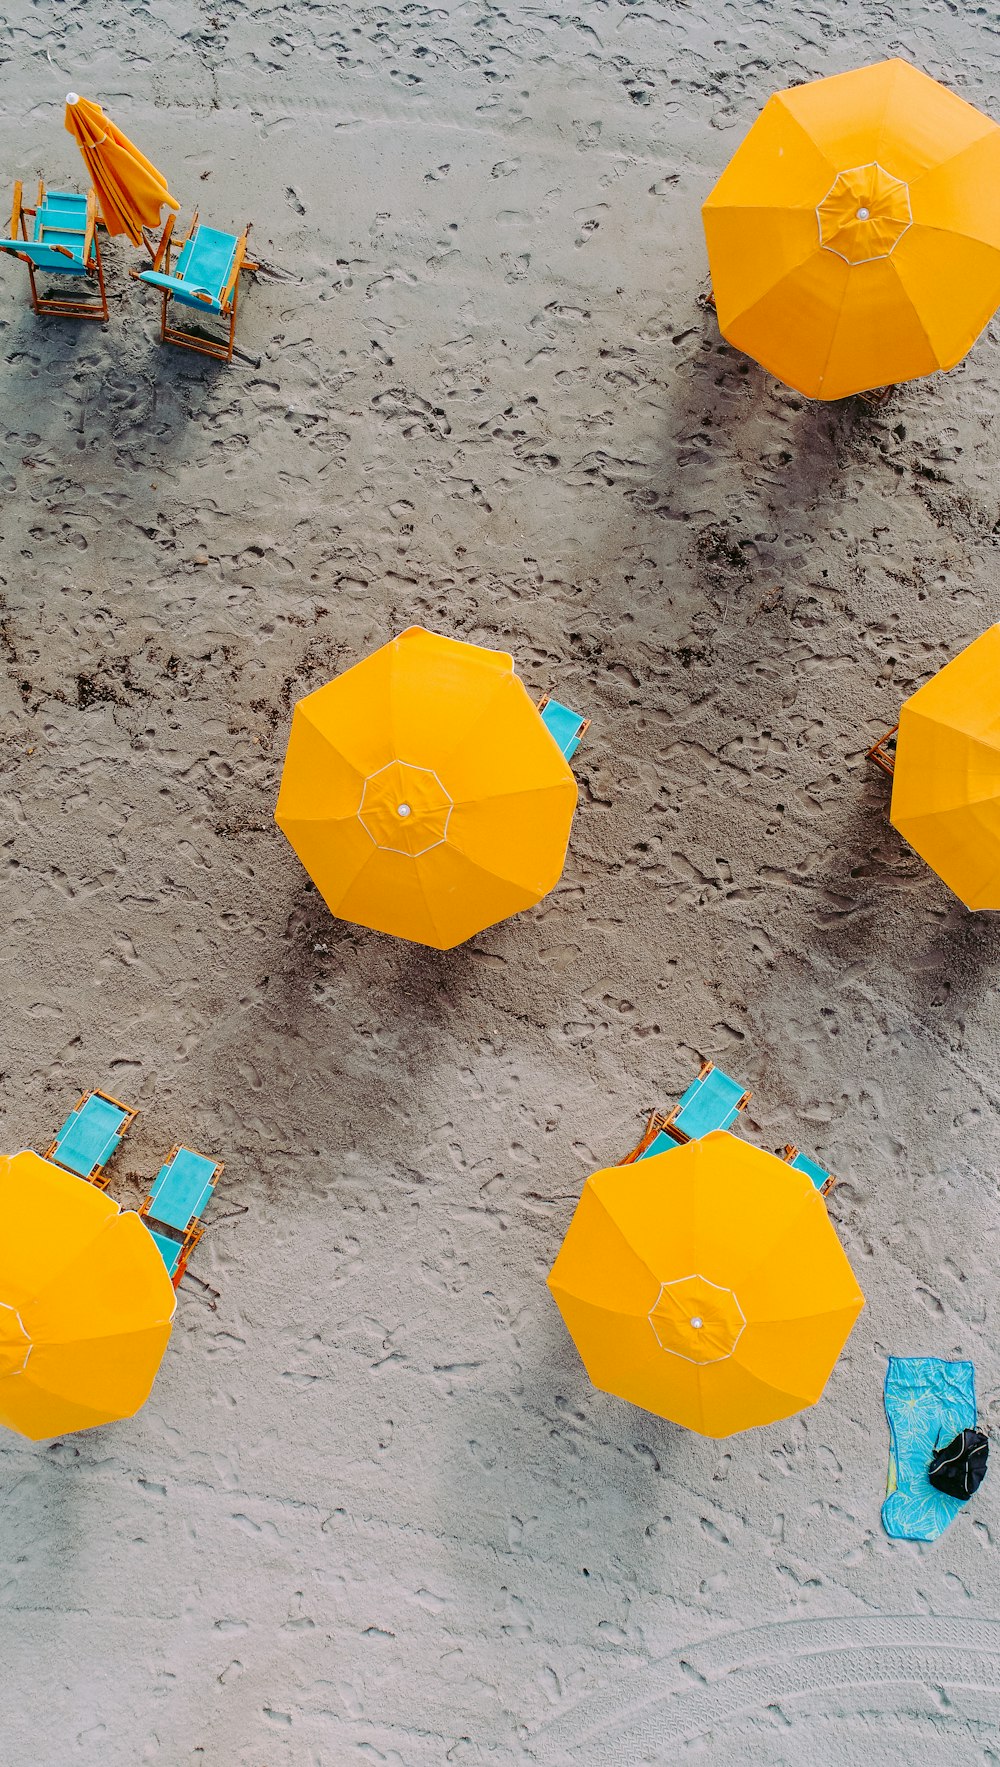 cinq parapluies jaunes sur le sable pendant la journée